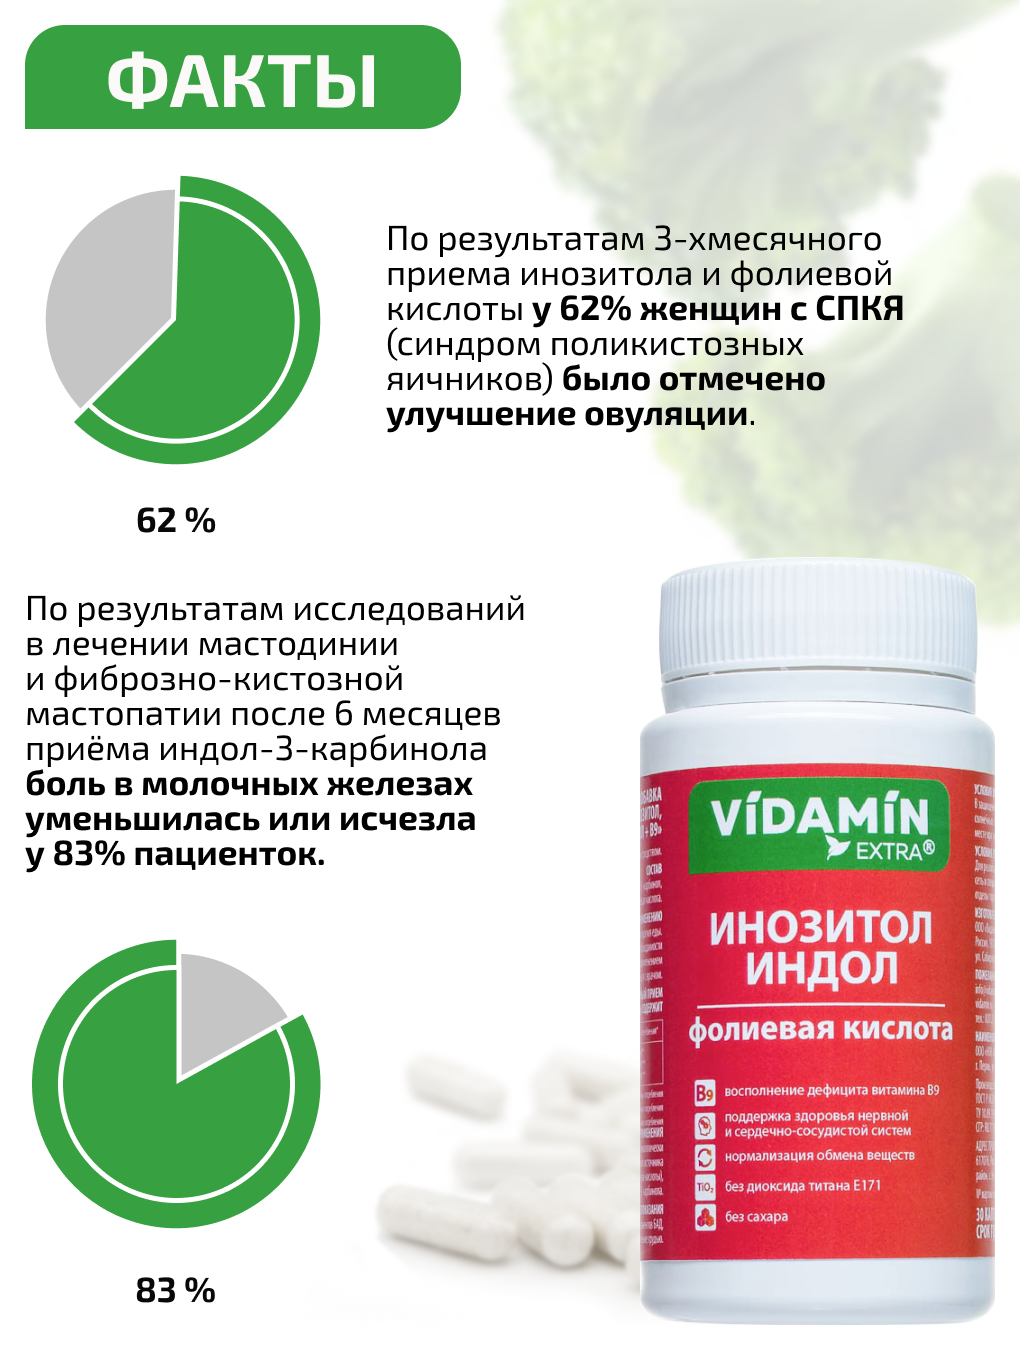 Инозитол индол витамин В9 VIDAMIN EXTRA для женского здоровья - фото 4